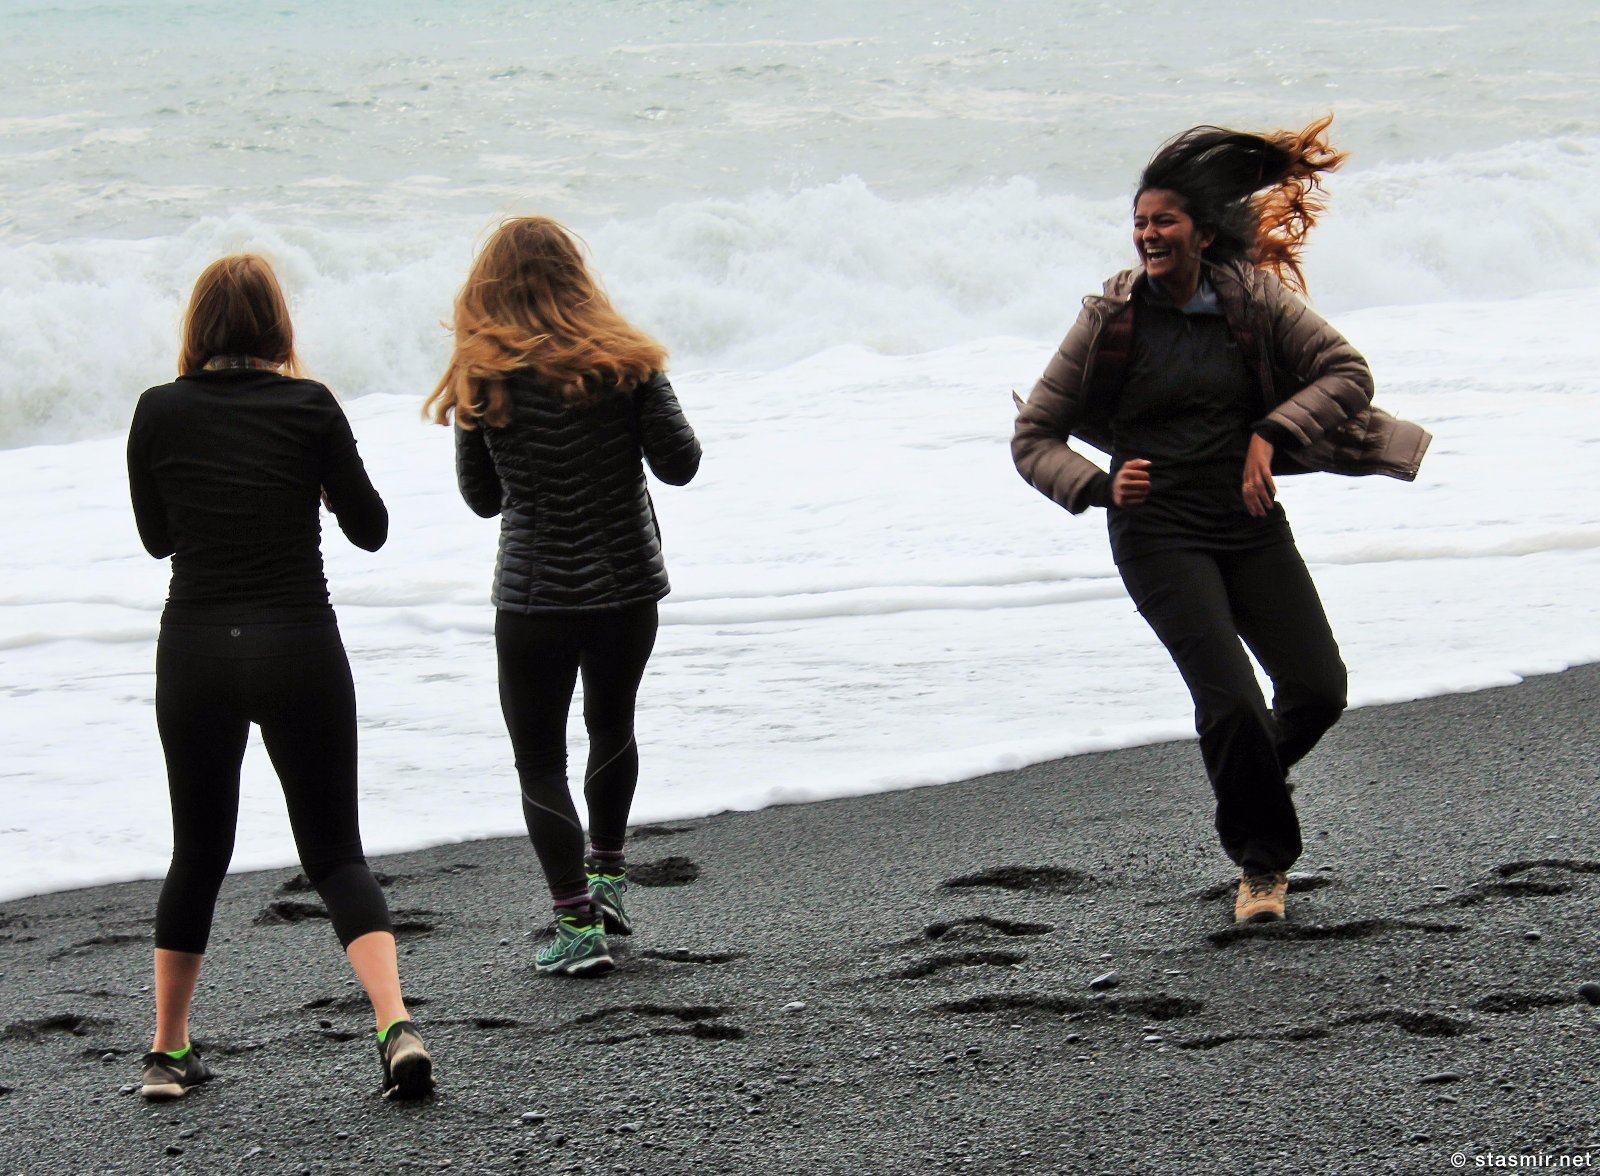 Рейнисфьяра, коса черного песка в Южной Исландии, туристки спасаются от неожиданной волны, фото Стасмир, photo Stasmir